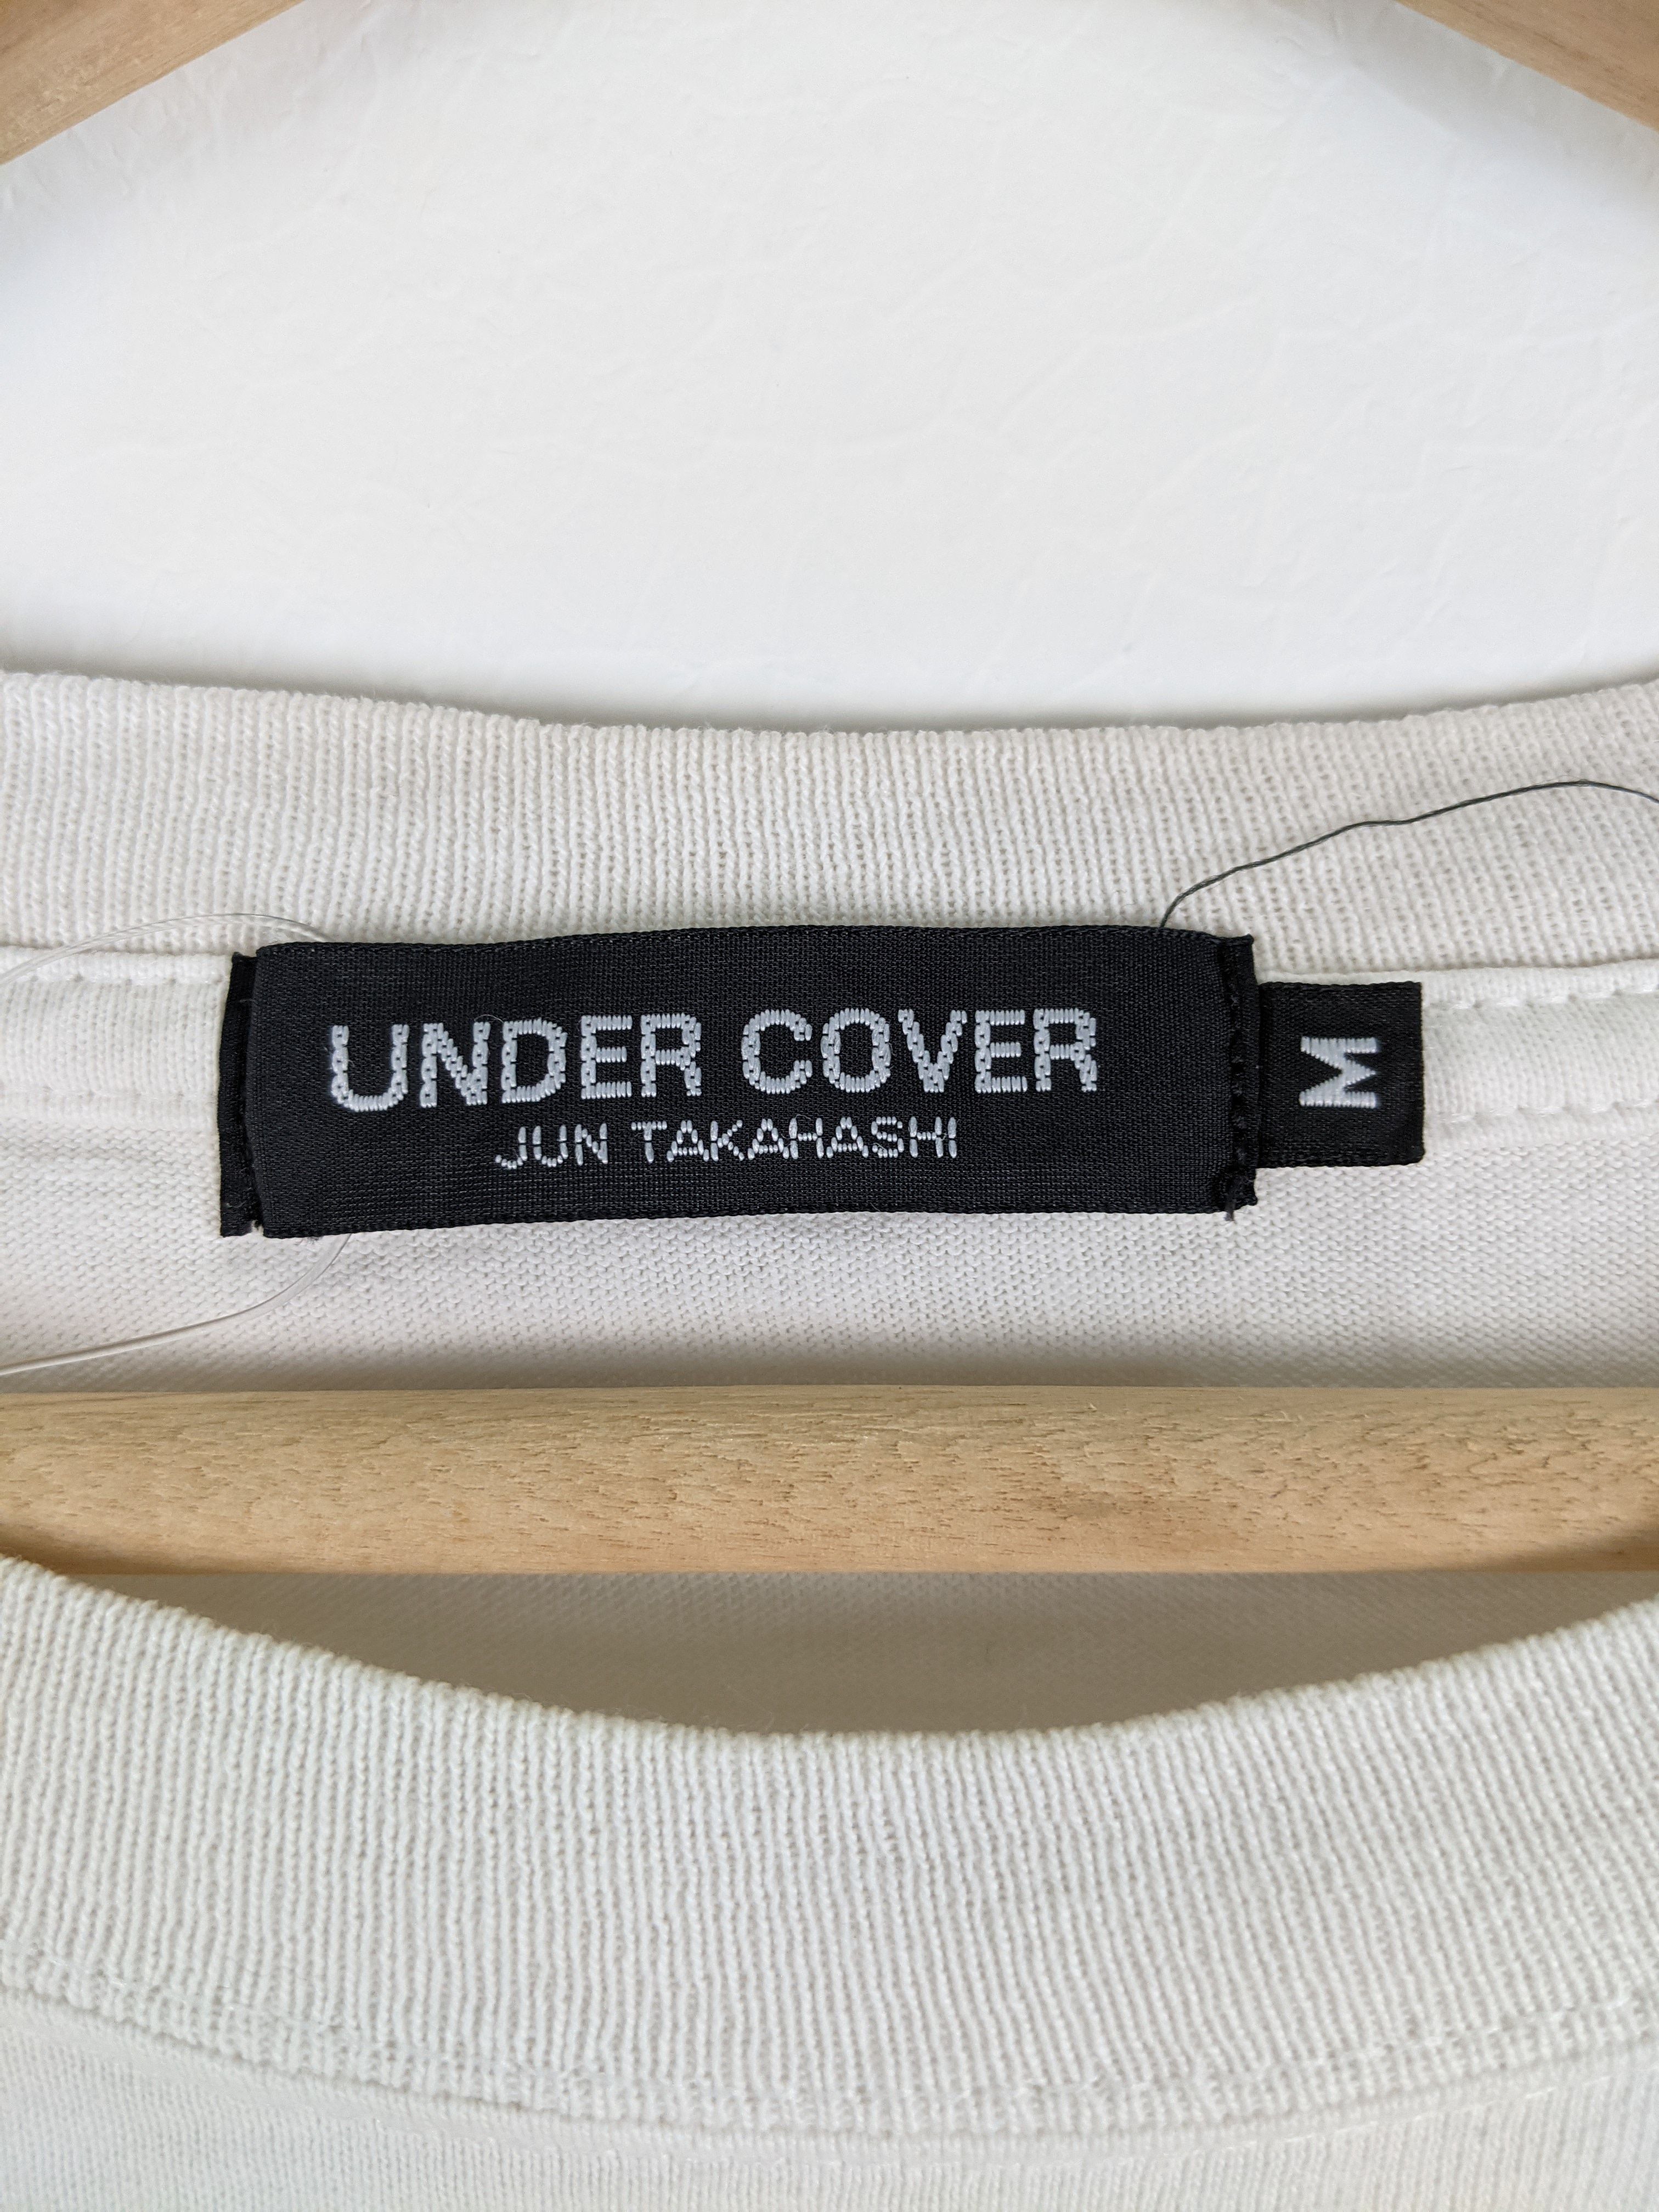 Undercover Summer Madness shirt - 5